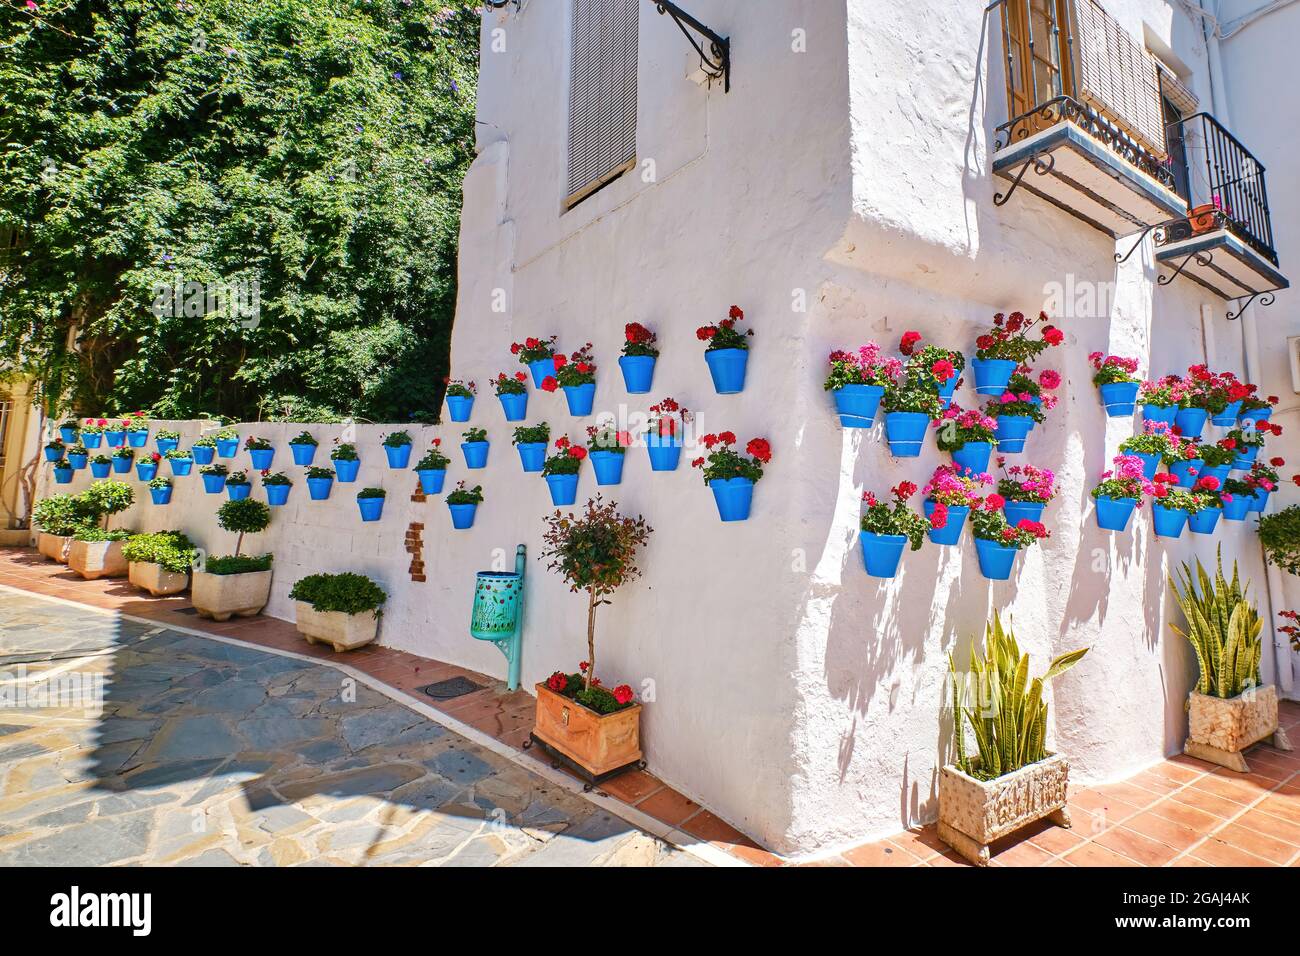 Bella città vecchia di Marbella in una giornata estiva soleggiata. Pareti bianche decorate con vaso di fiori blu. Foto Stock